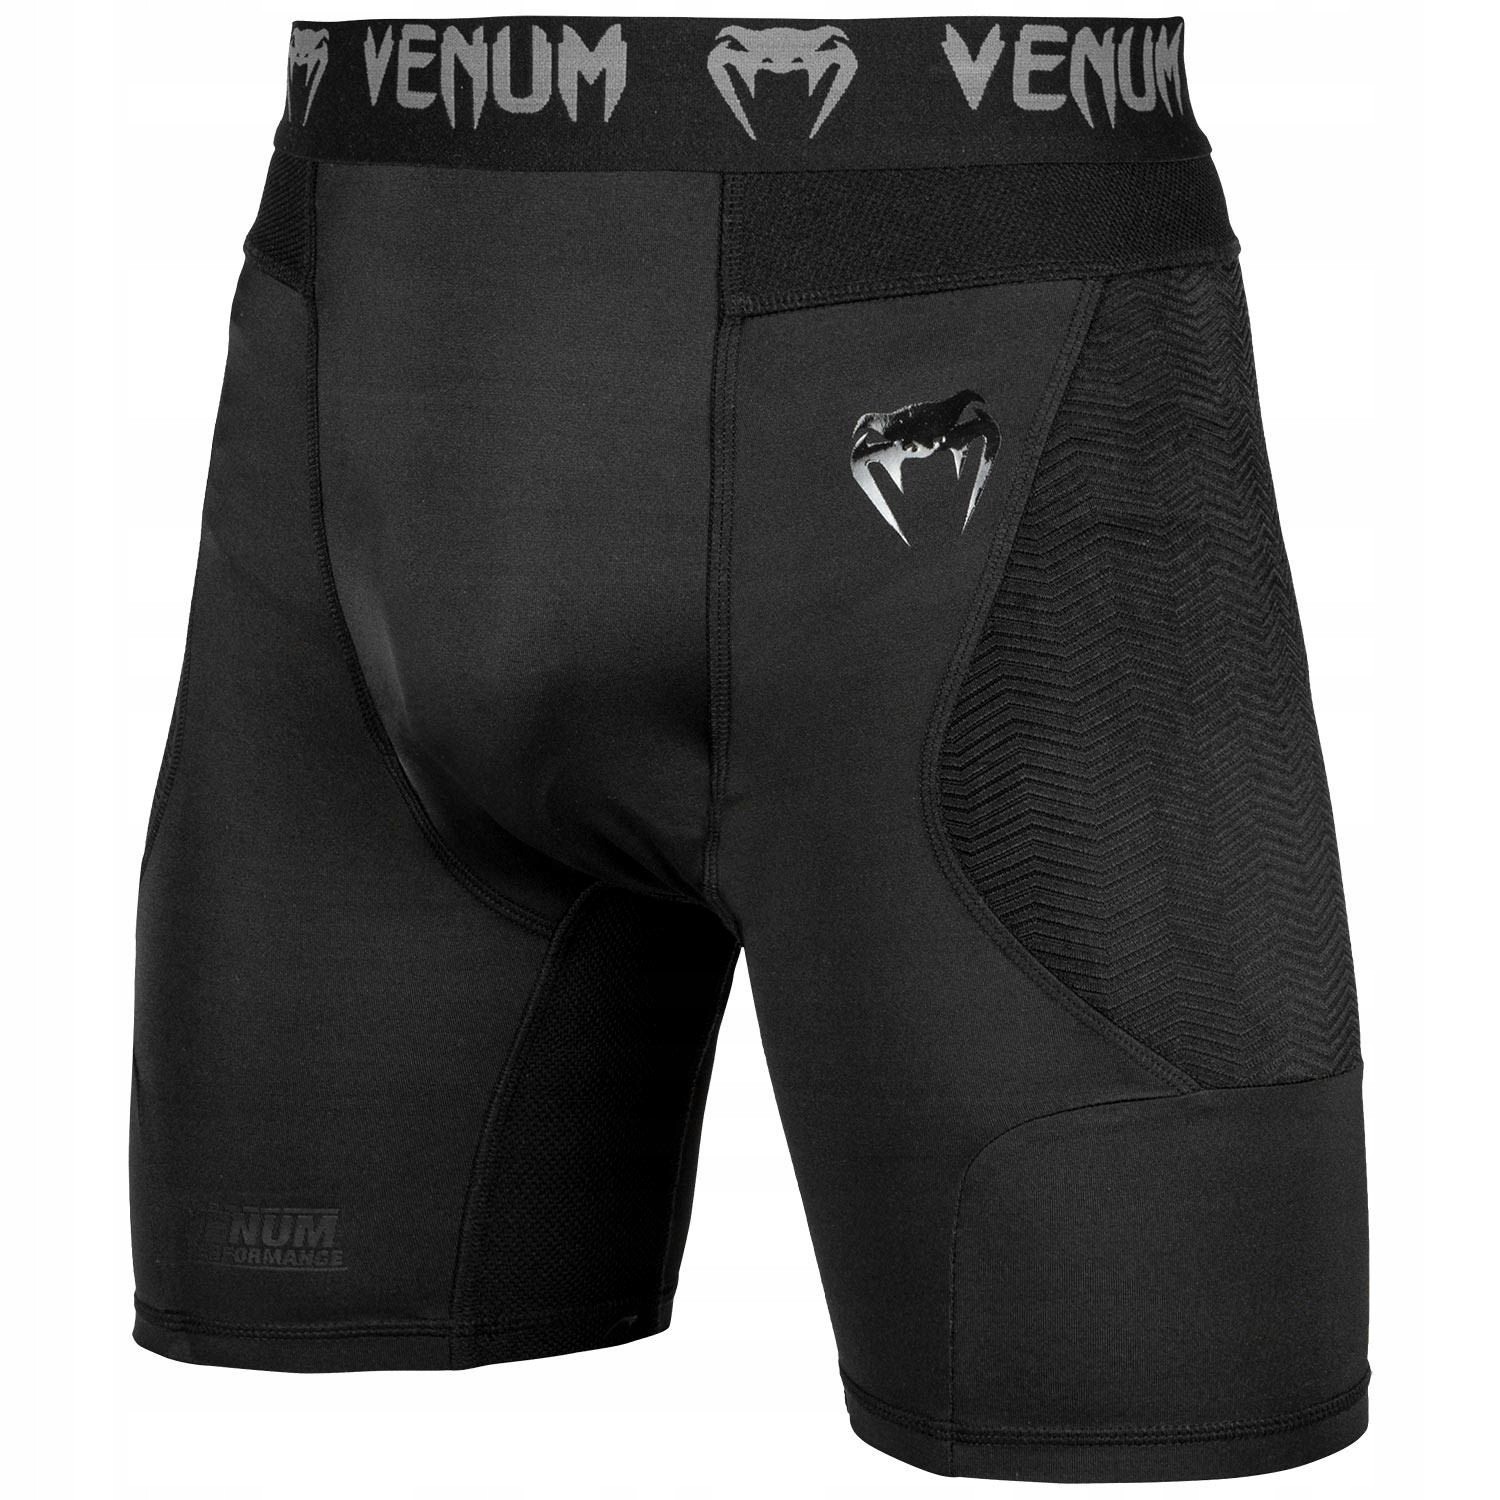 Купить компрессионные шорты. Venum шорты g-Fit. Компрессионные шорты Venum. Шорты Venum g-Fit Black 02395, s. Venum g-Fit Black шорты мужские.